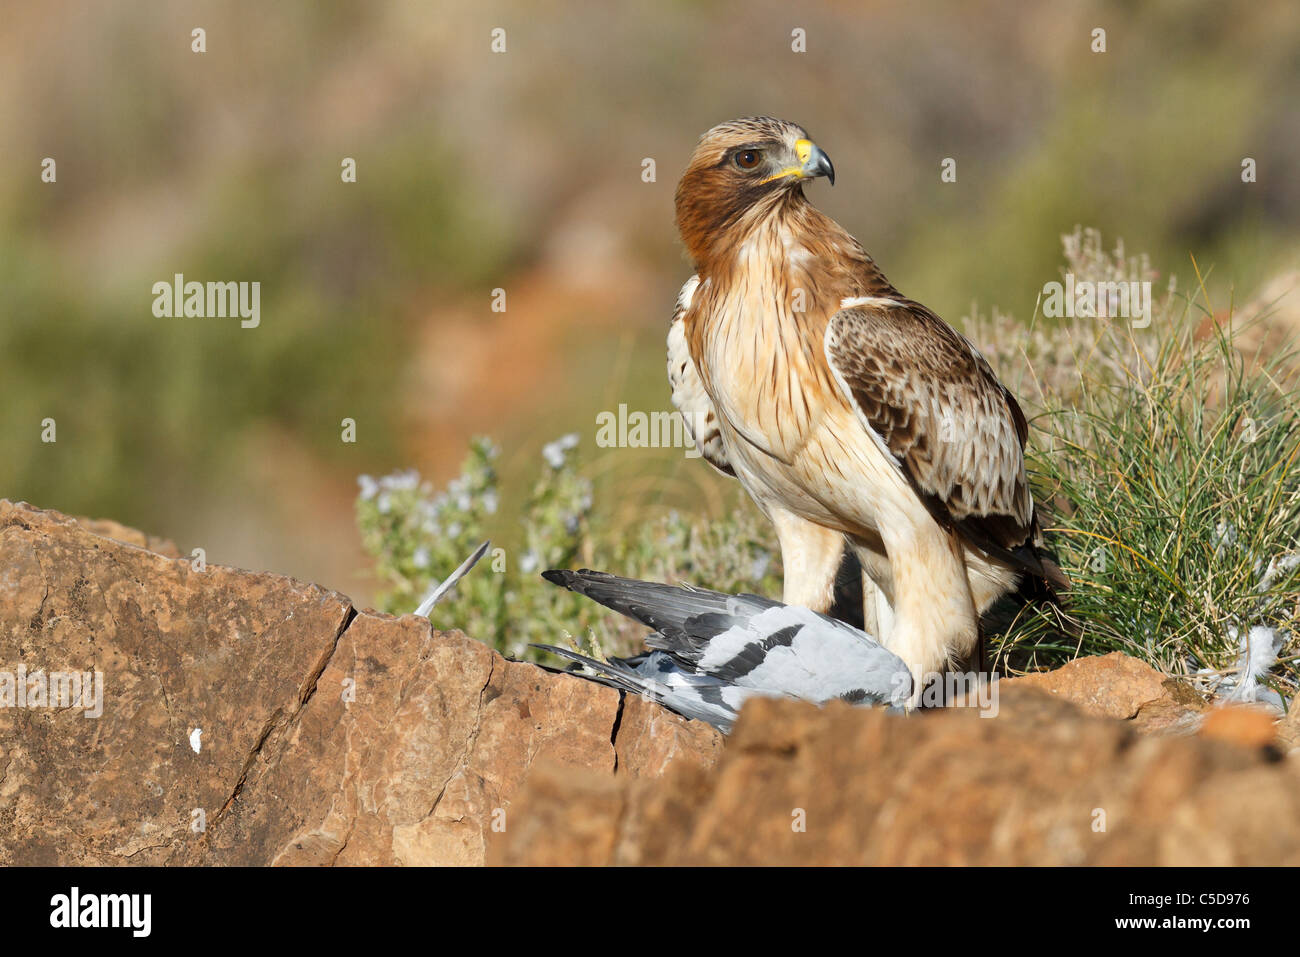 Booted eagle (hieraaetus pennatus) adult, hunting. Spain. Stock Photo